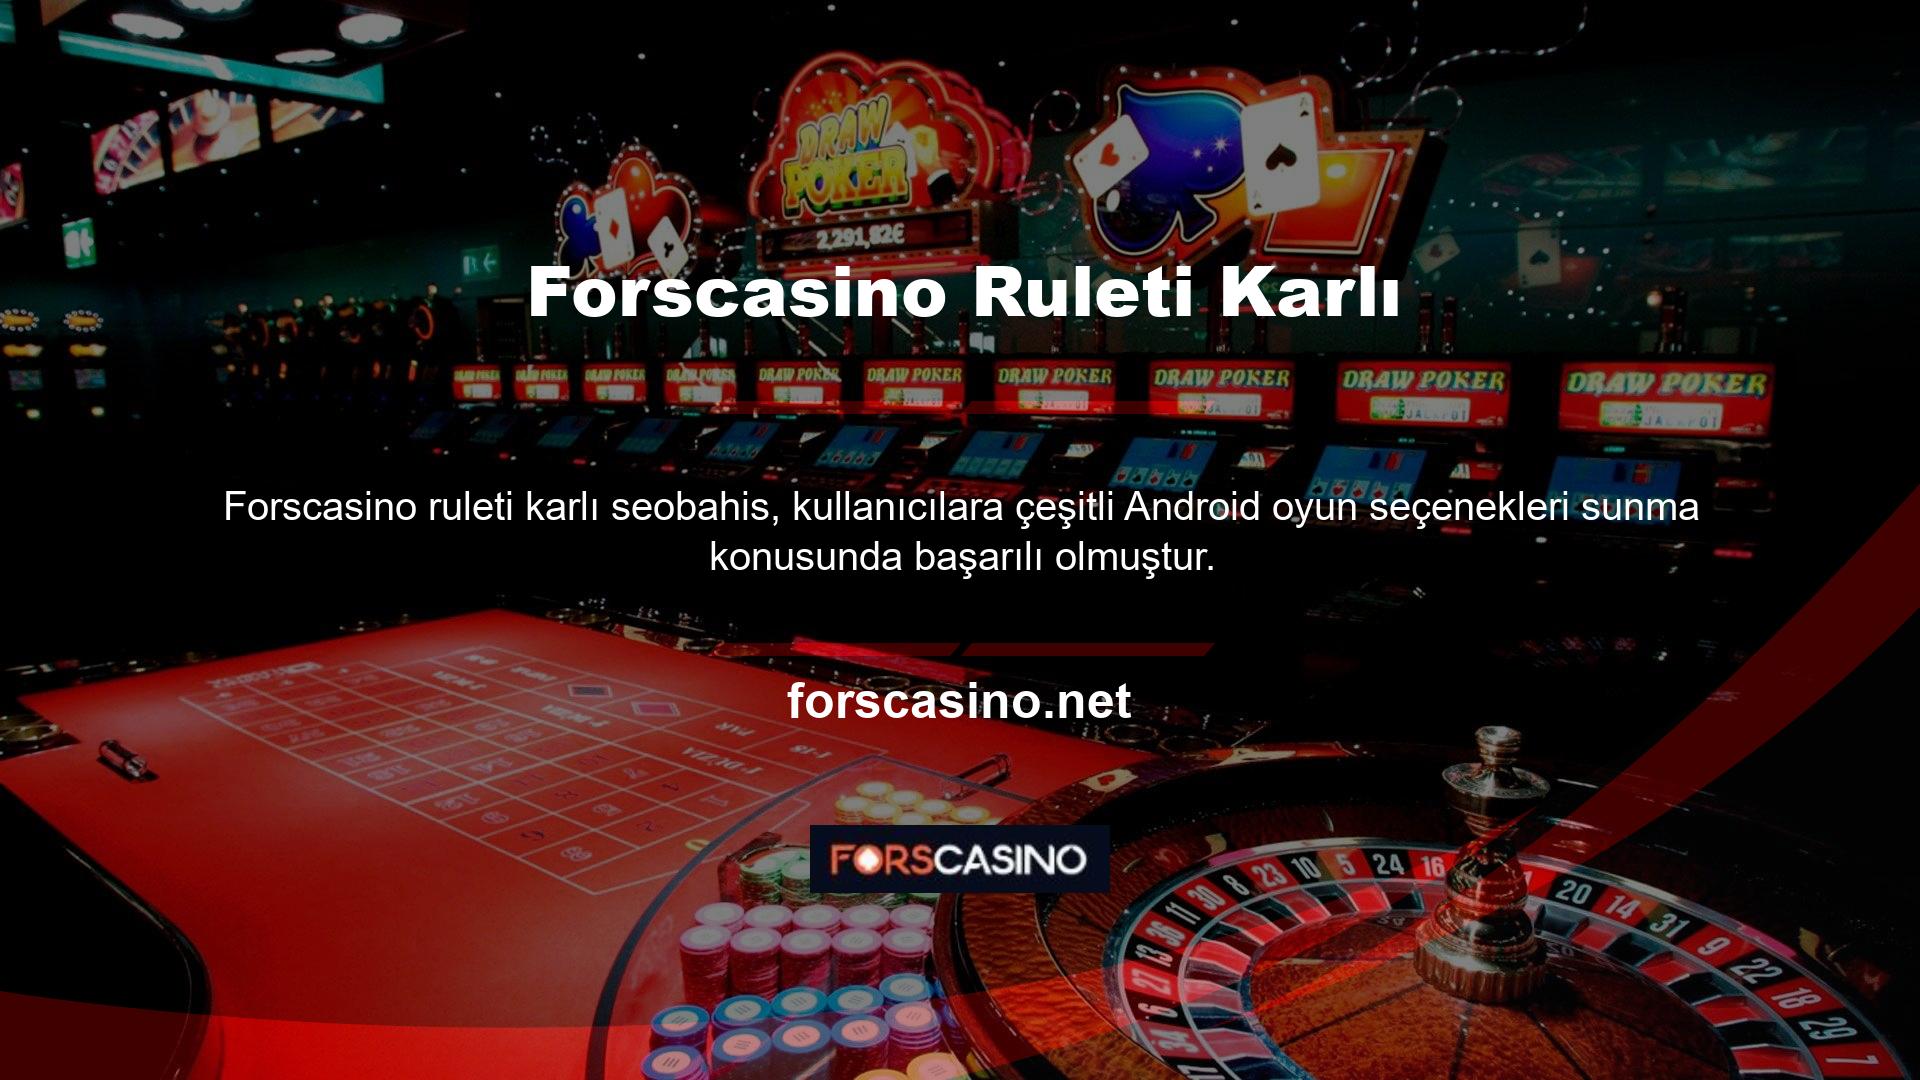 Neredeyse bir yüzyıldır dünyanın en önemli casino oyunlarından biri olmayı sürdürüyor